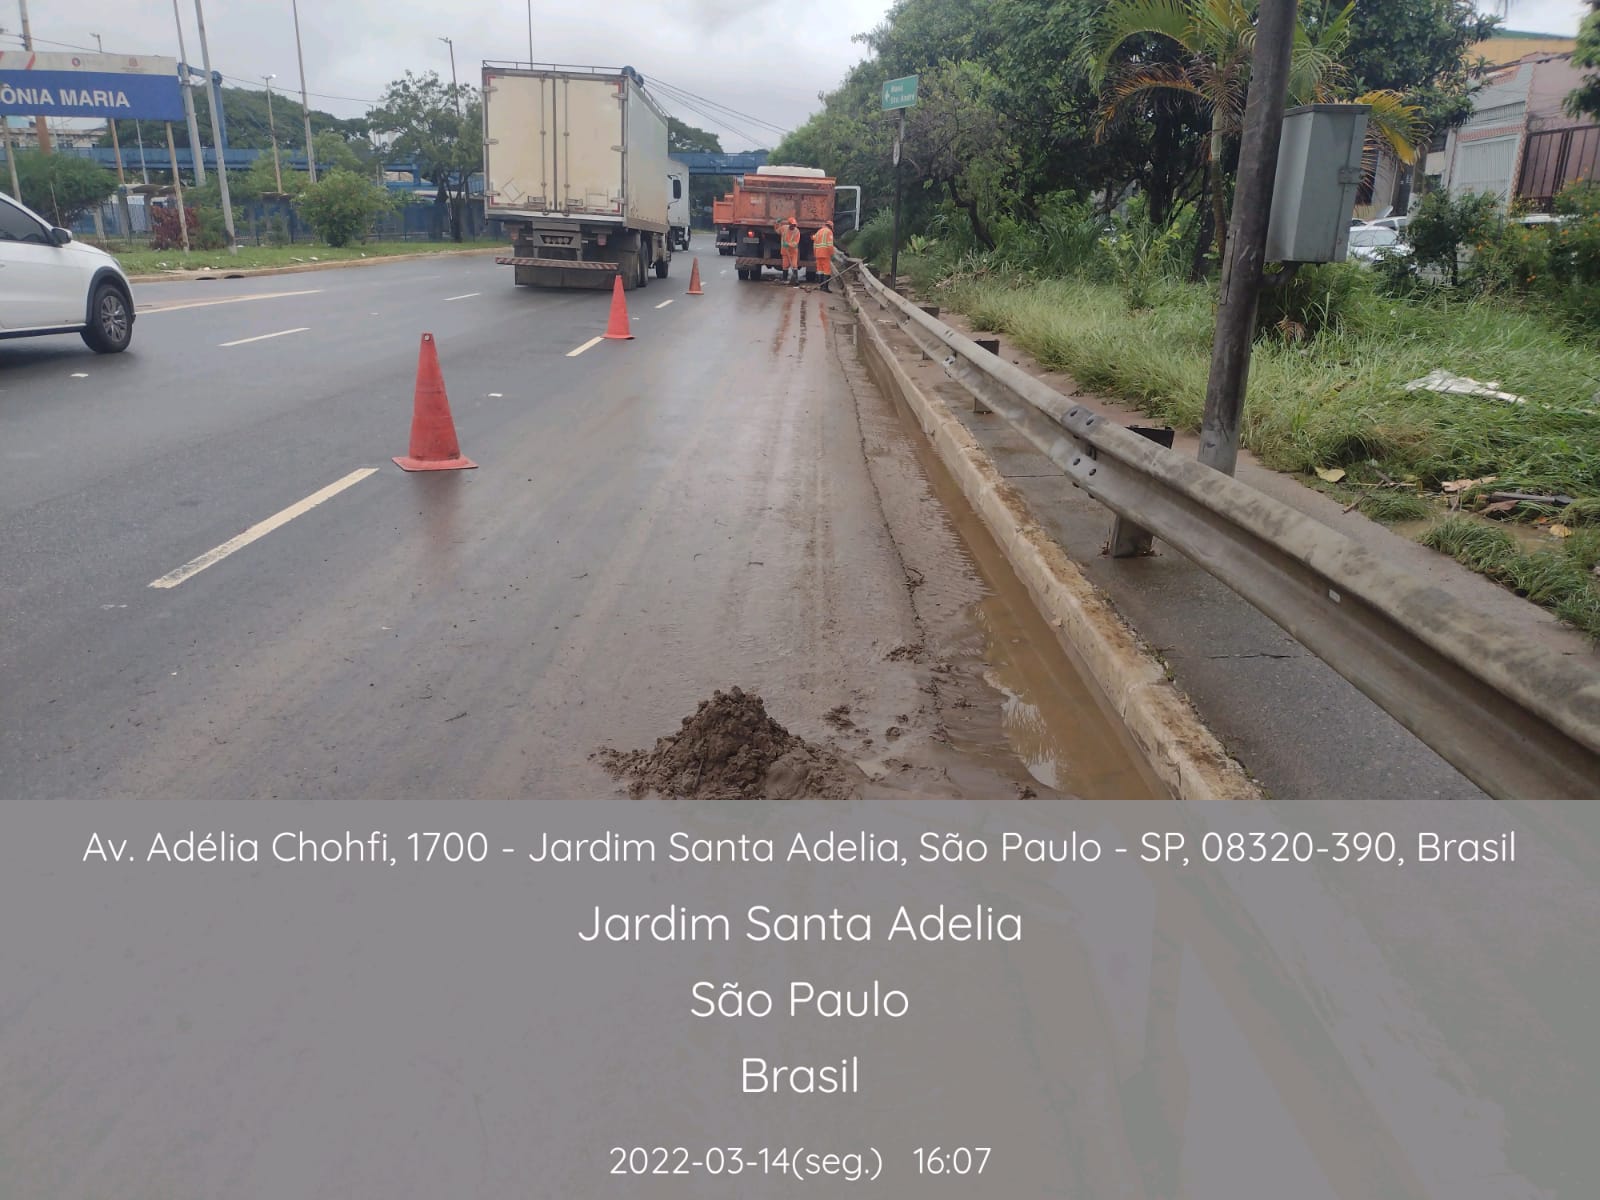 Cones de sinalização estão dispostos em uma faixa de tráfego da Avenida Adélia Chohfi. Ao fundo, trabalhadores limpam a pista, atrás de um caminhão basculante. 